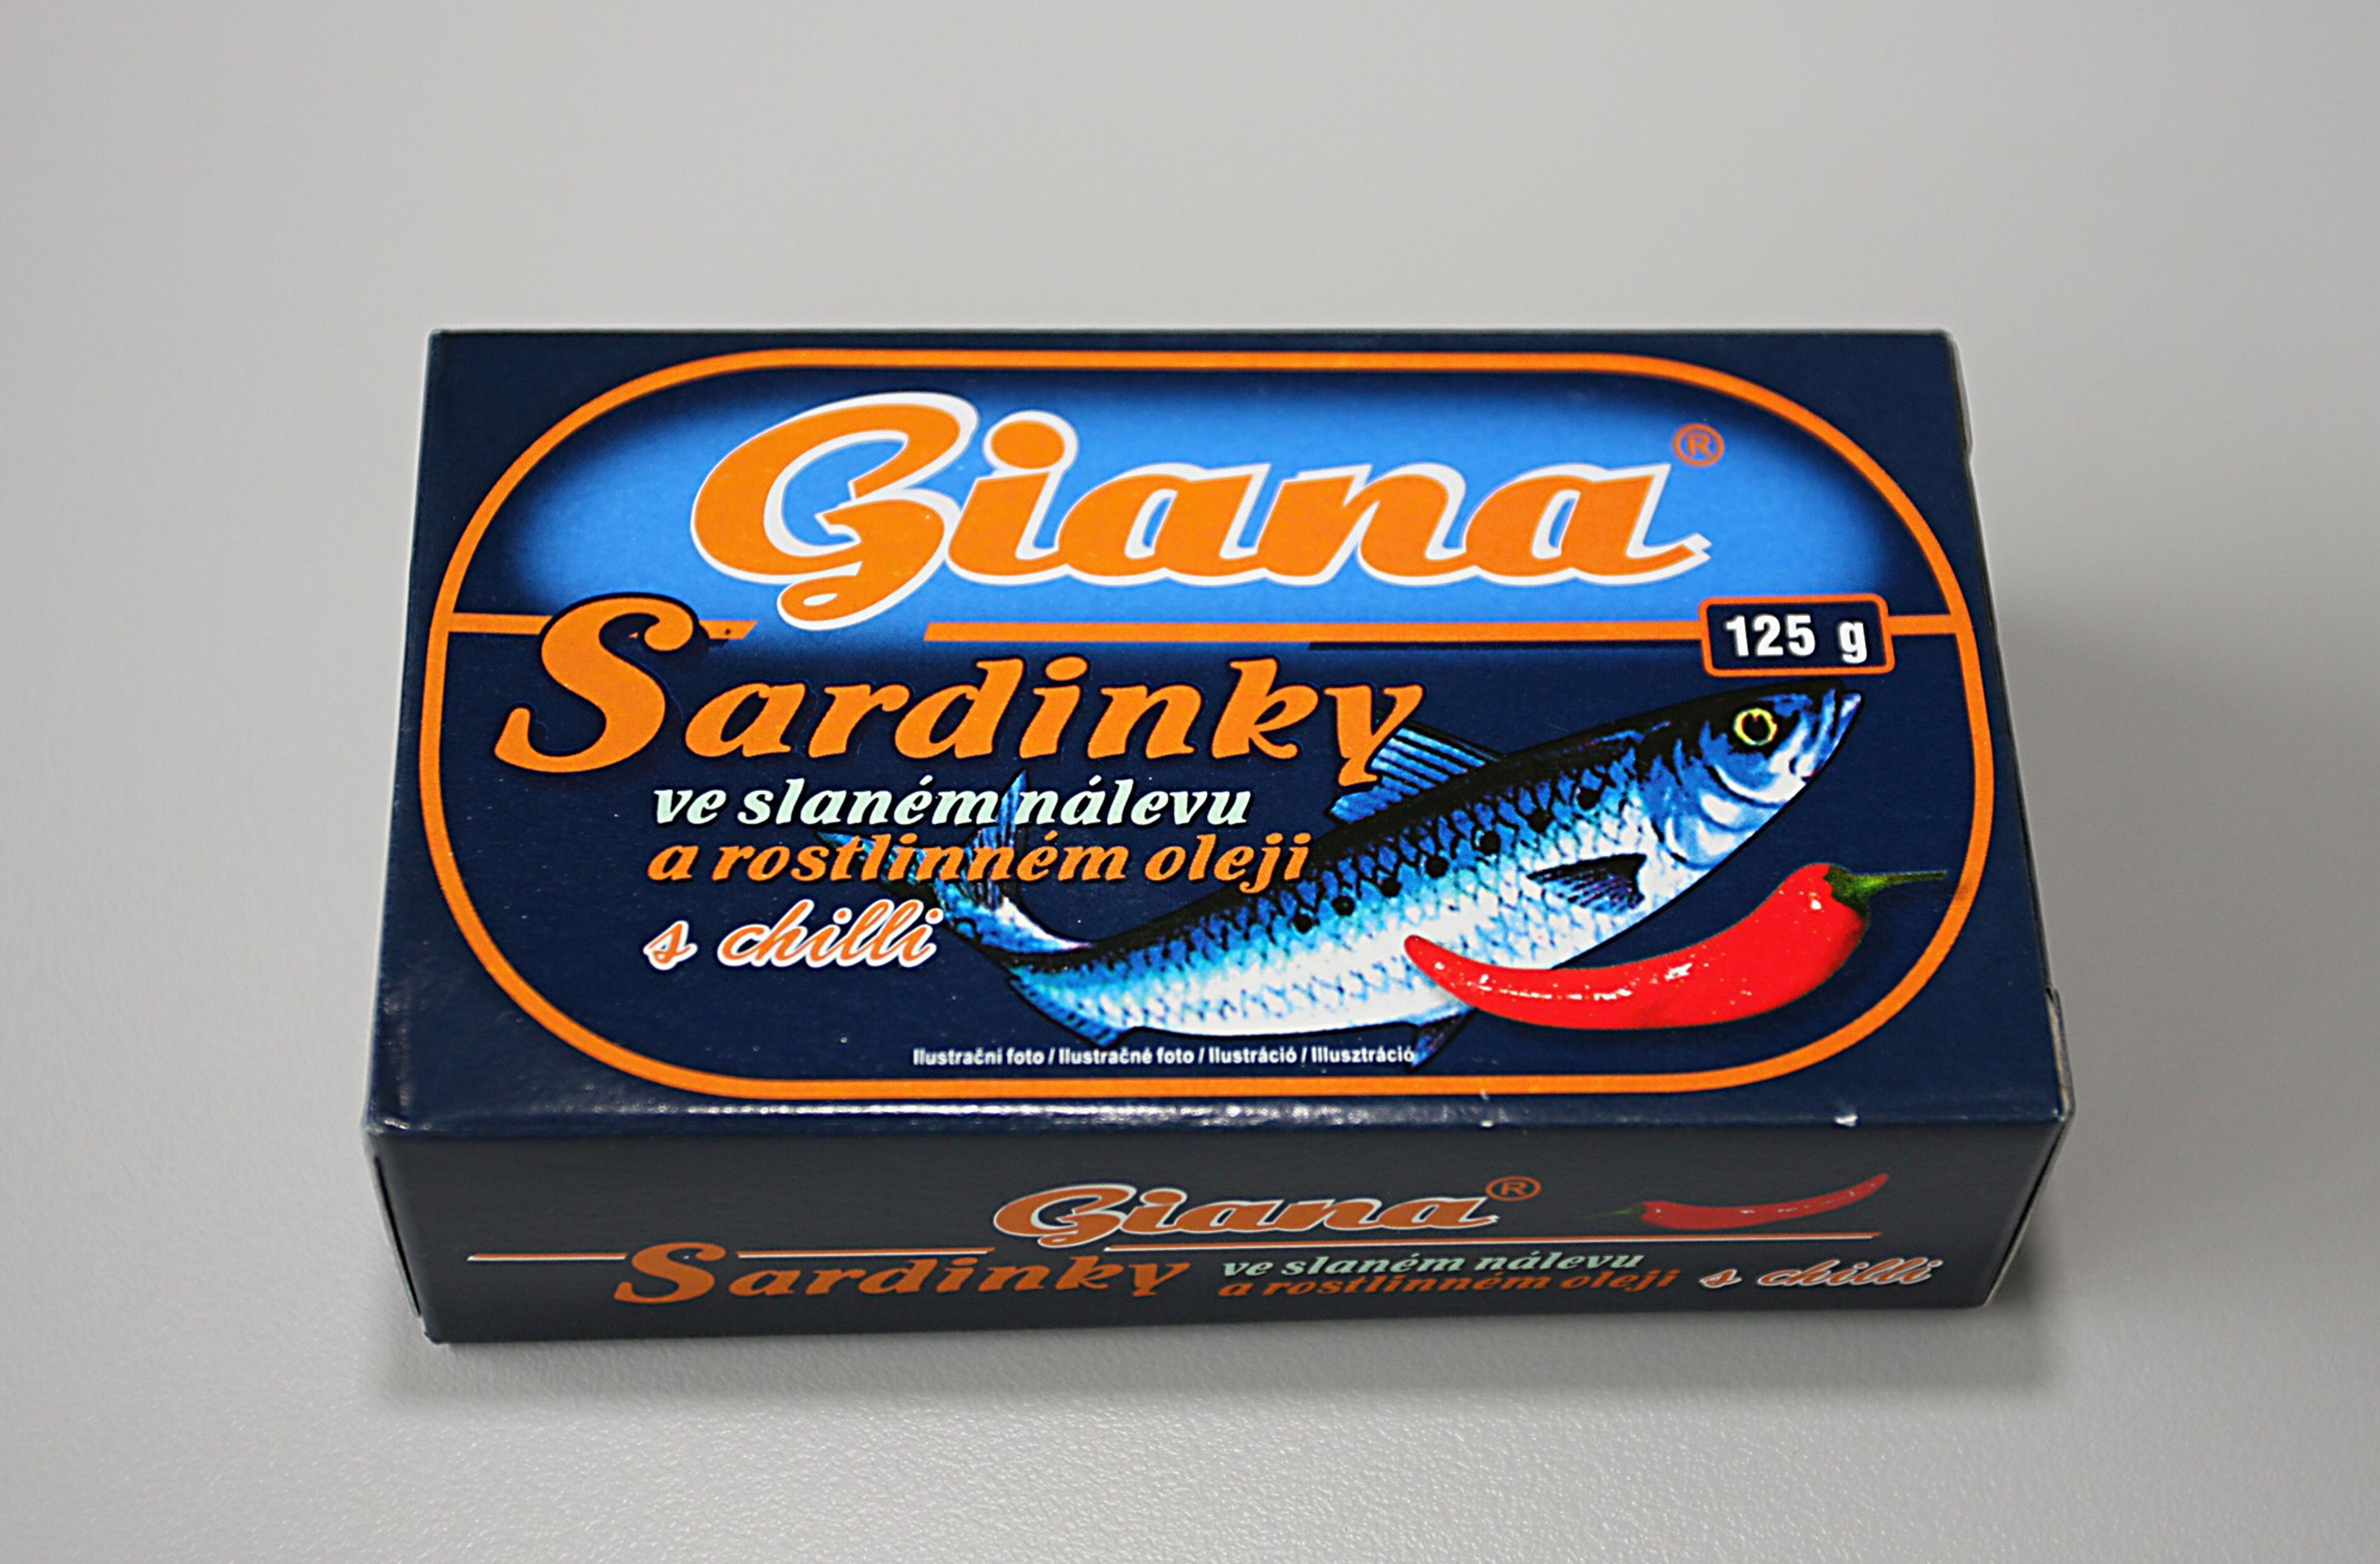 Test - sardinky - Giana - Test sardinek (12/13)